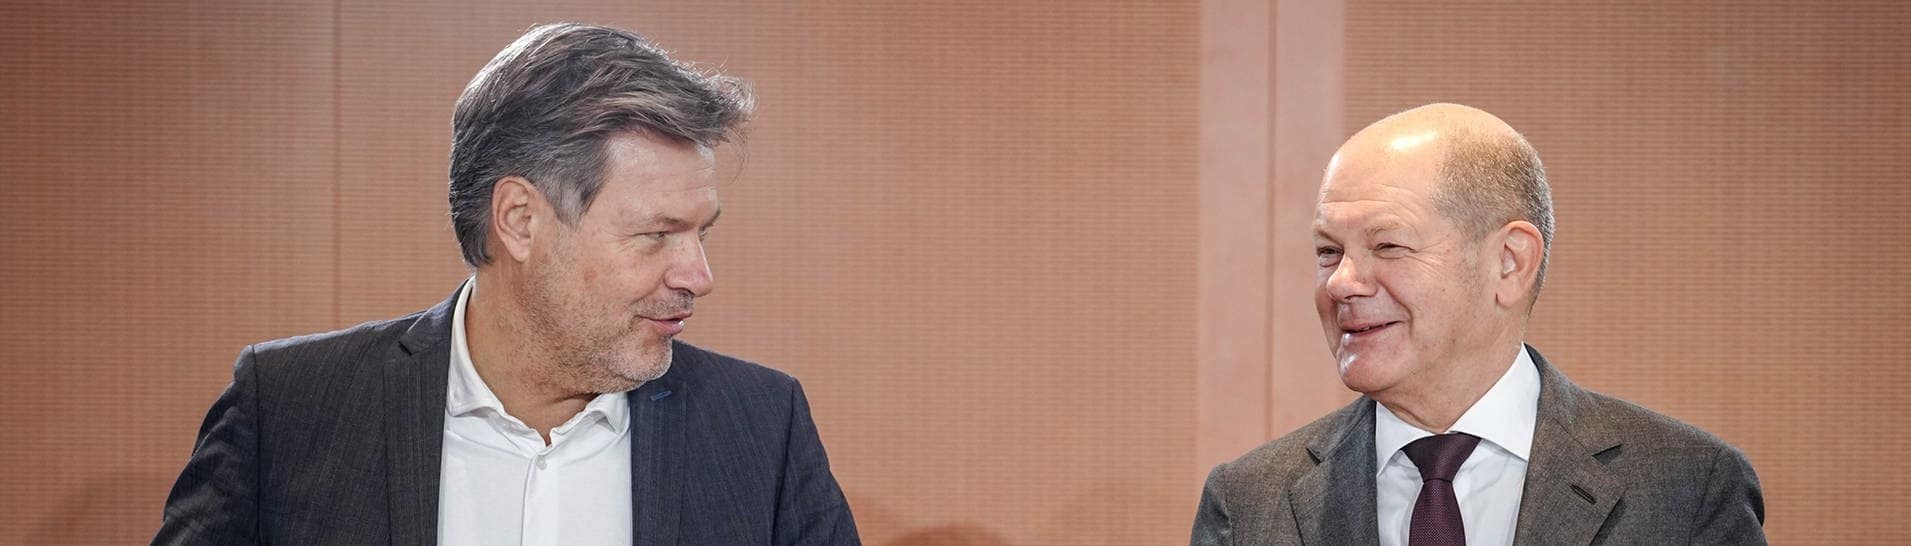 Bundeskanzler Olaf Scholz (SPD, r) und Robert Habeck (Bündnis 90Die Grünen), Bundesminister für Wirtschaft und Klimaschutz, nehmen an der Sitzung des Bundeskabinetts im Bundeskanzleramt teil.